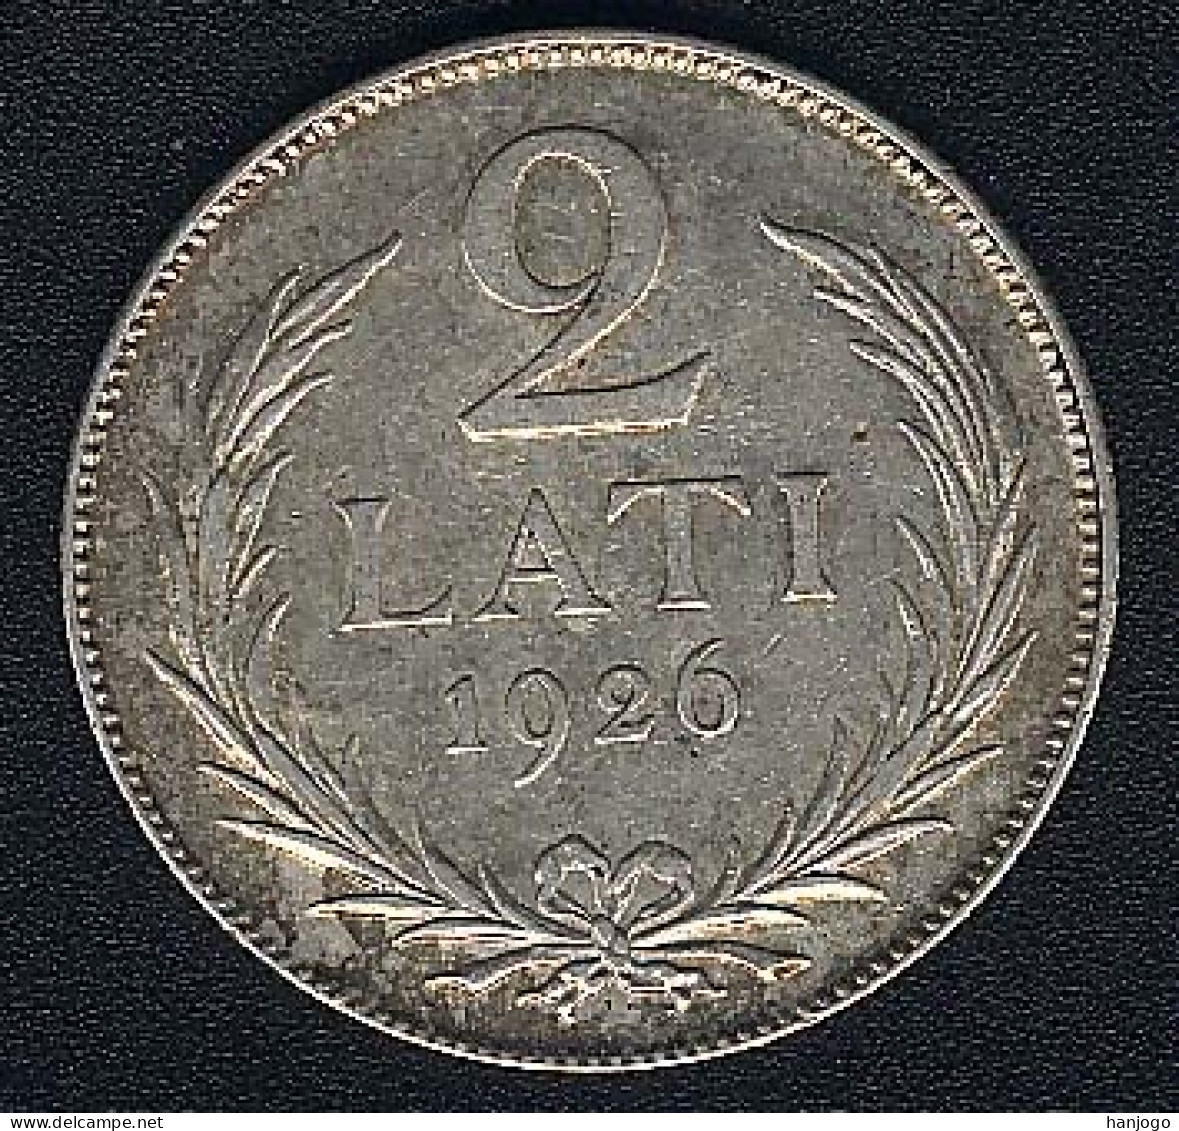 Lettland, 2 Lati 1926, Silber, XF - Letland